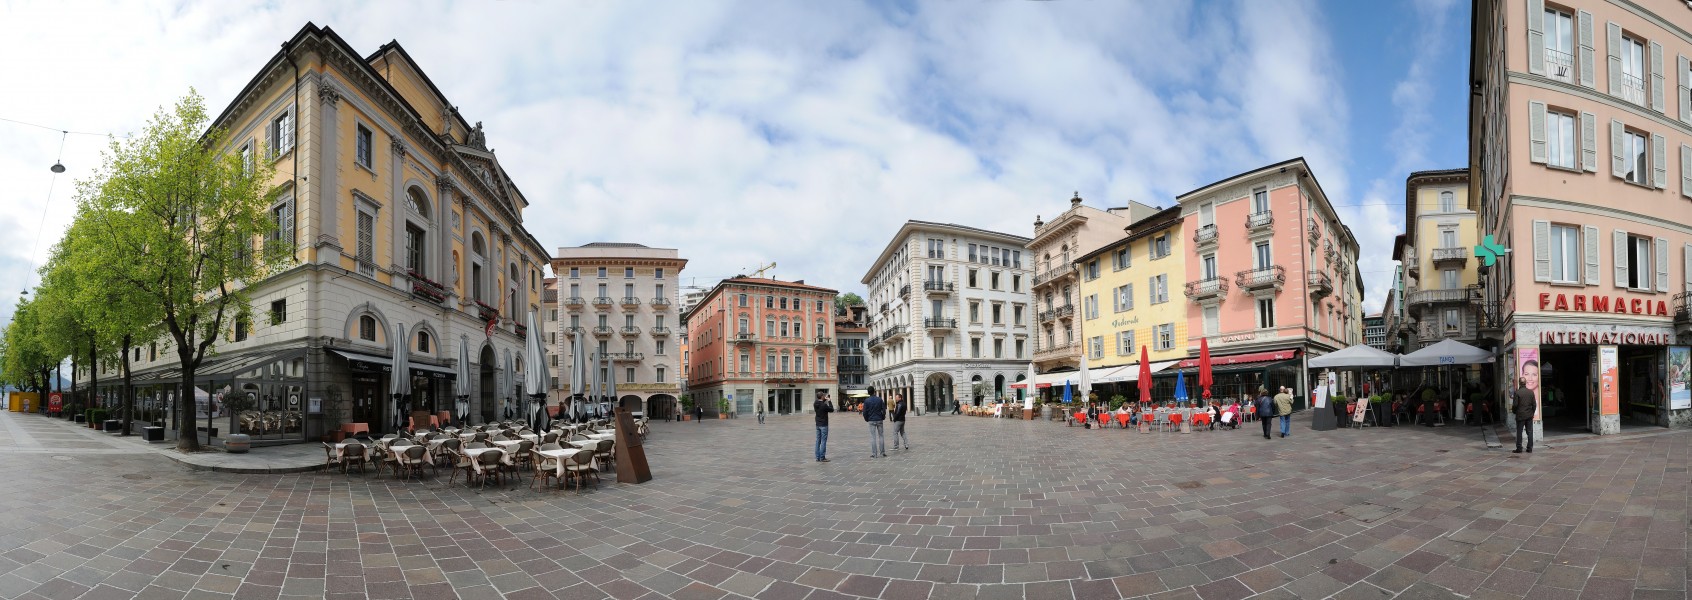 Piazza della Riforma, Lugano 4